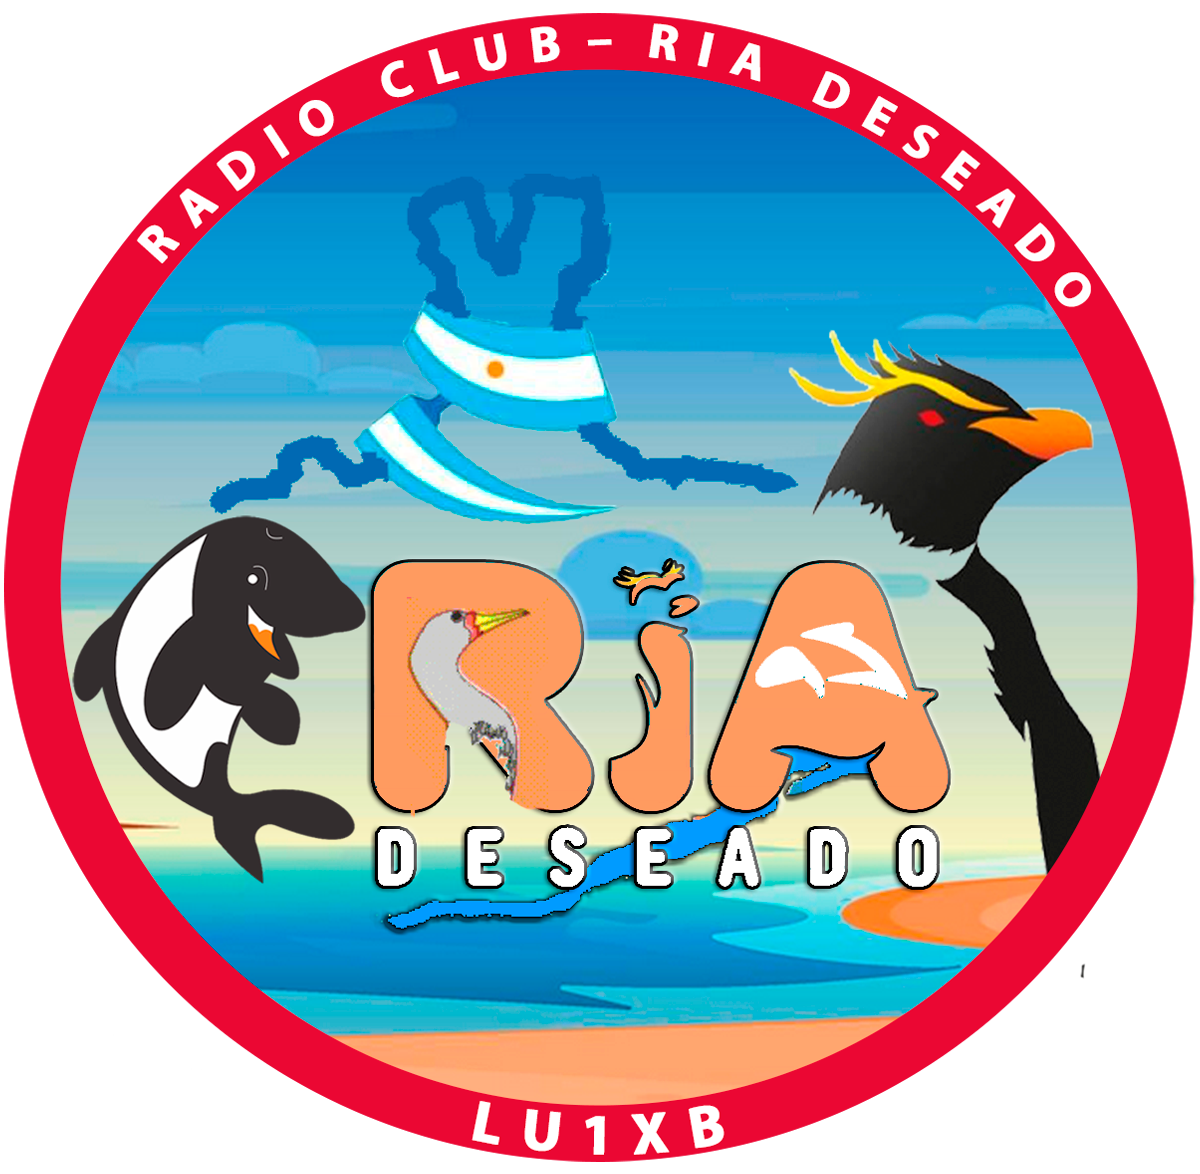 (LU1XB) Radio Club Ría Deseado"